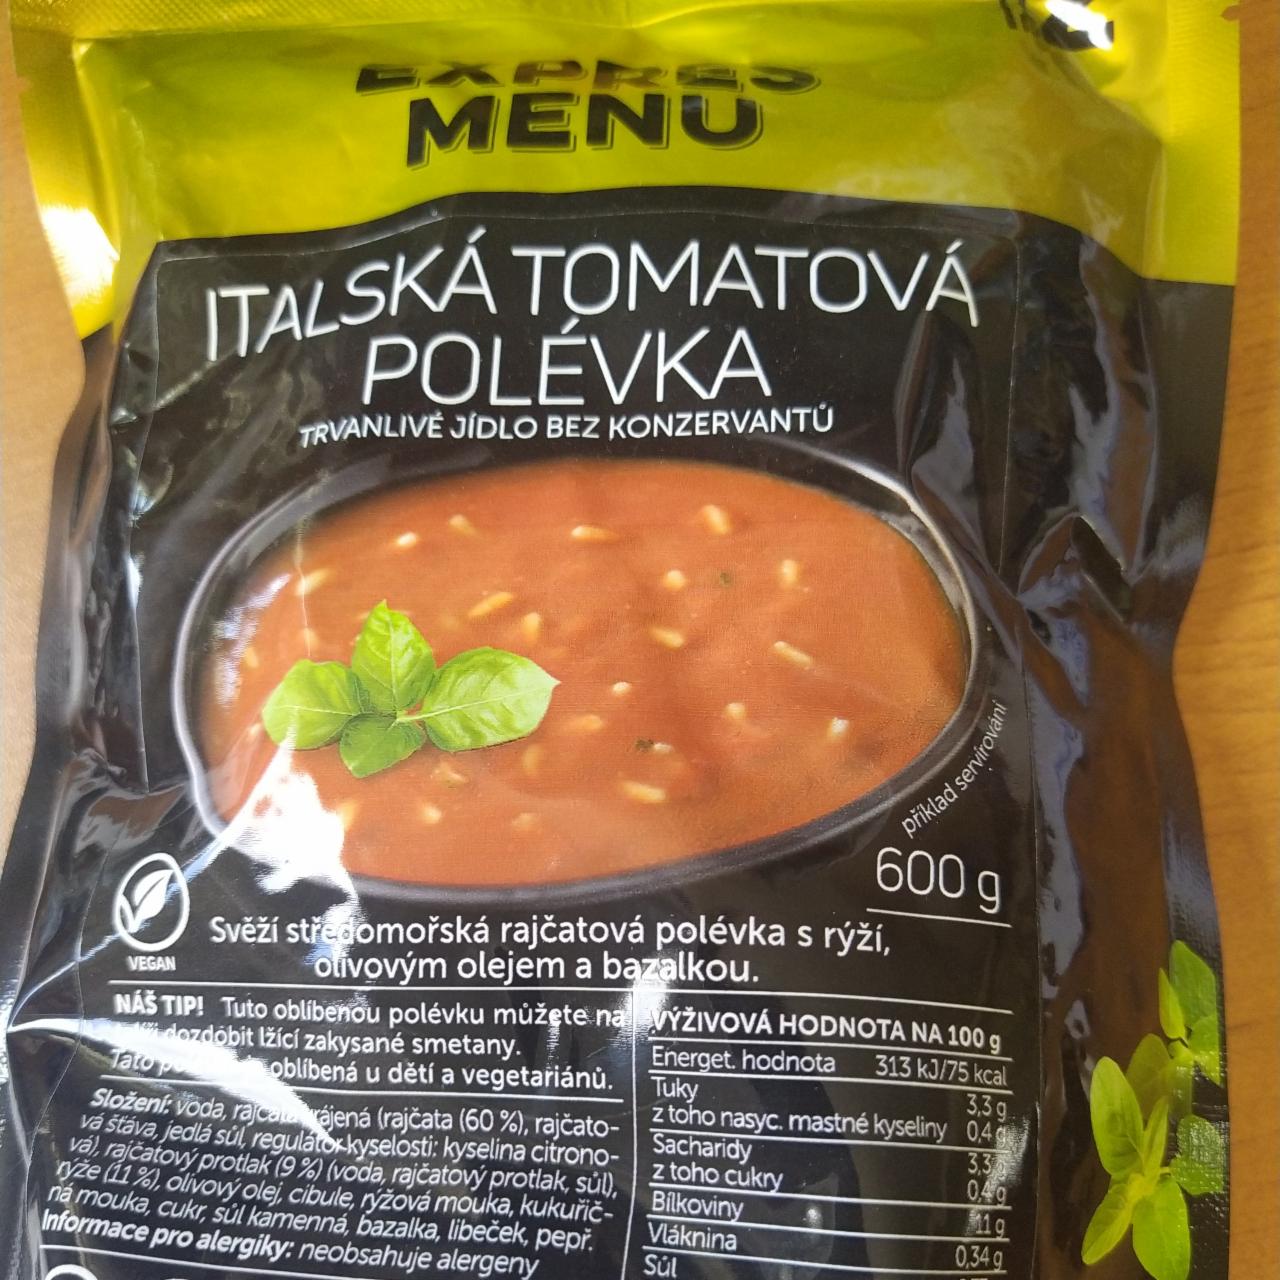 Fotografie - Italská tomatová polévka Expres menu